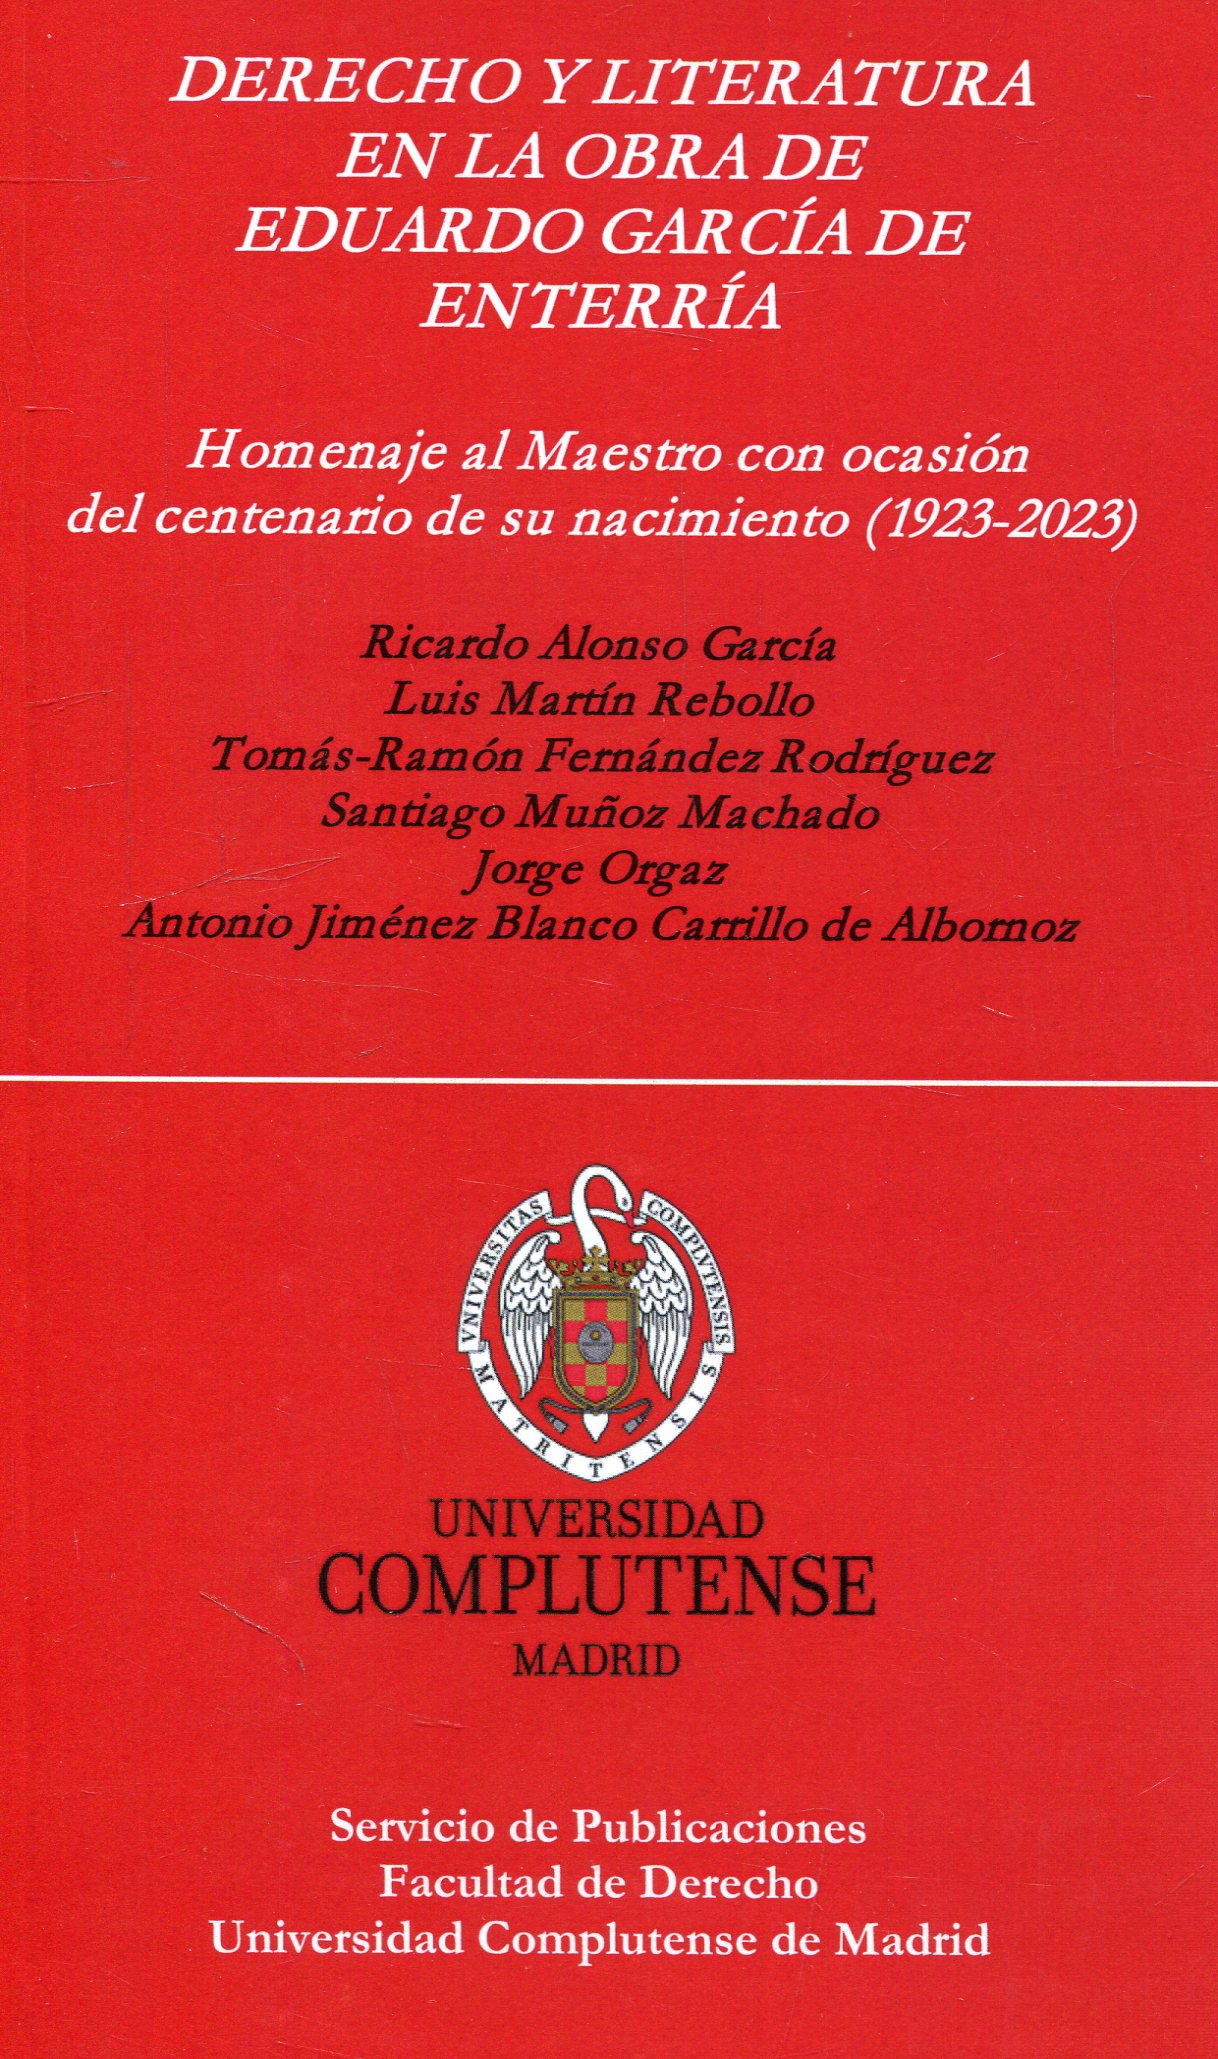 Imagen de portada del libro Derecho y Literatura en la obra de Eduardo García de Enterría